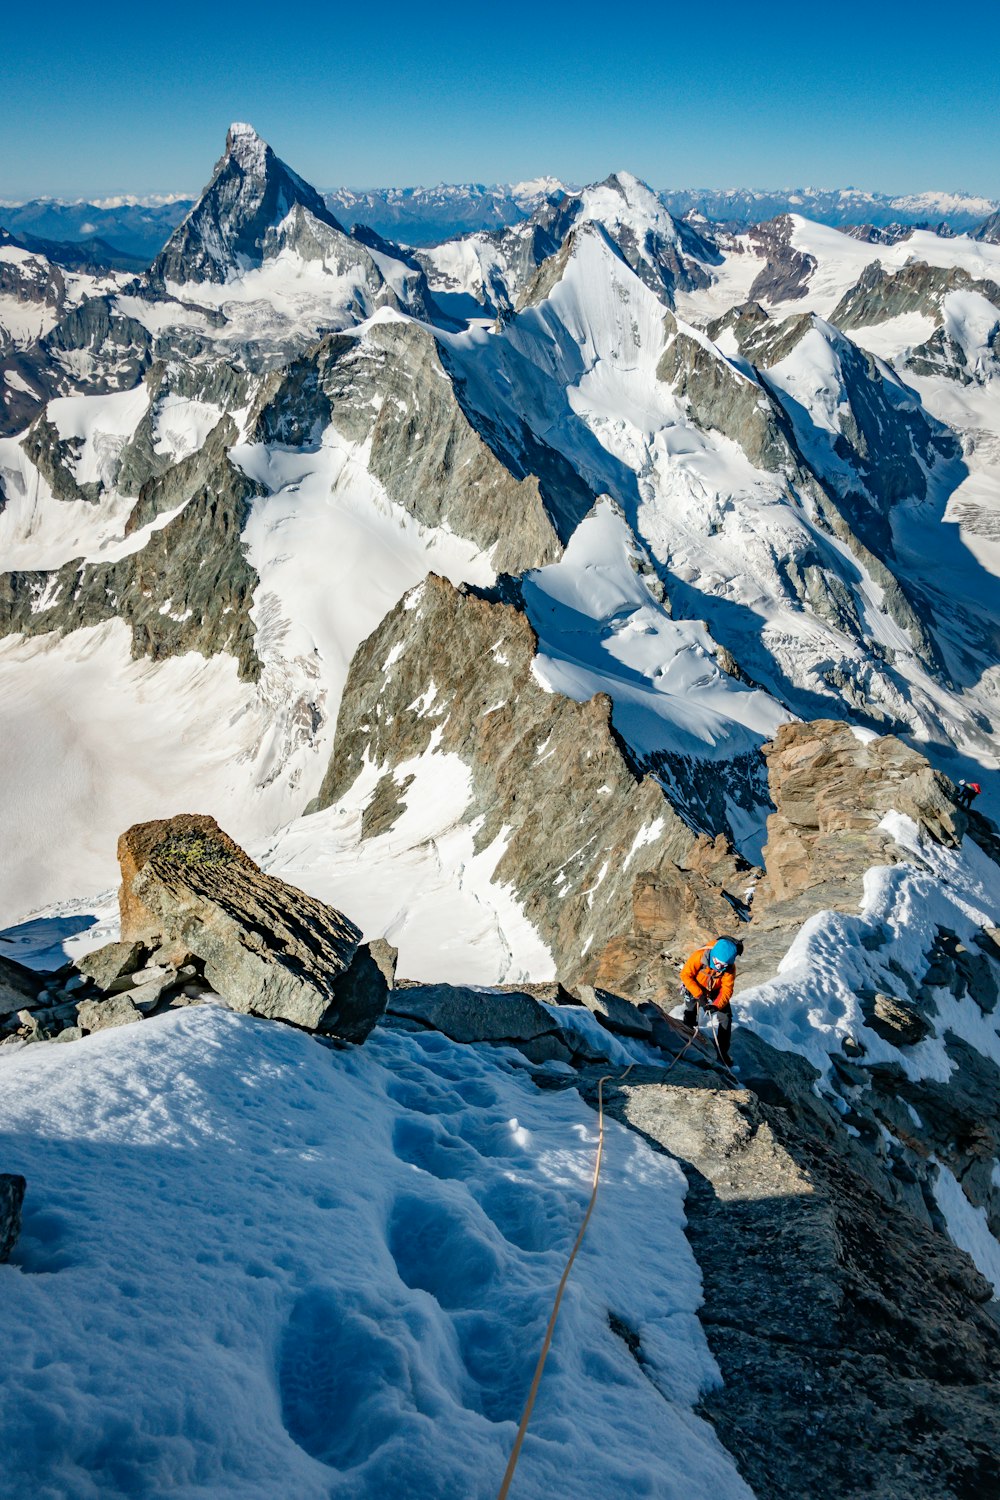 주황색 재킷과 검은 바지를 입은 사람이 낮에 눈 덮인 산에 서 있다